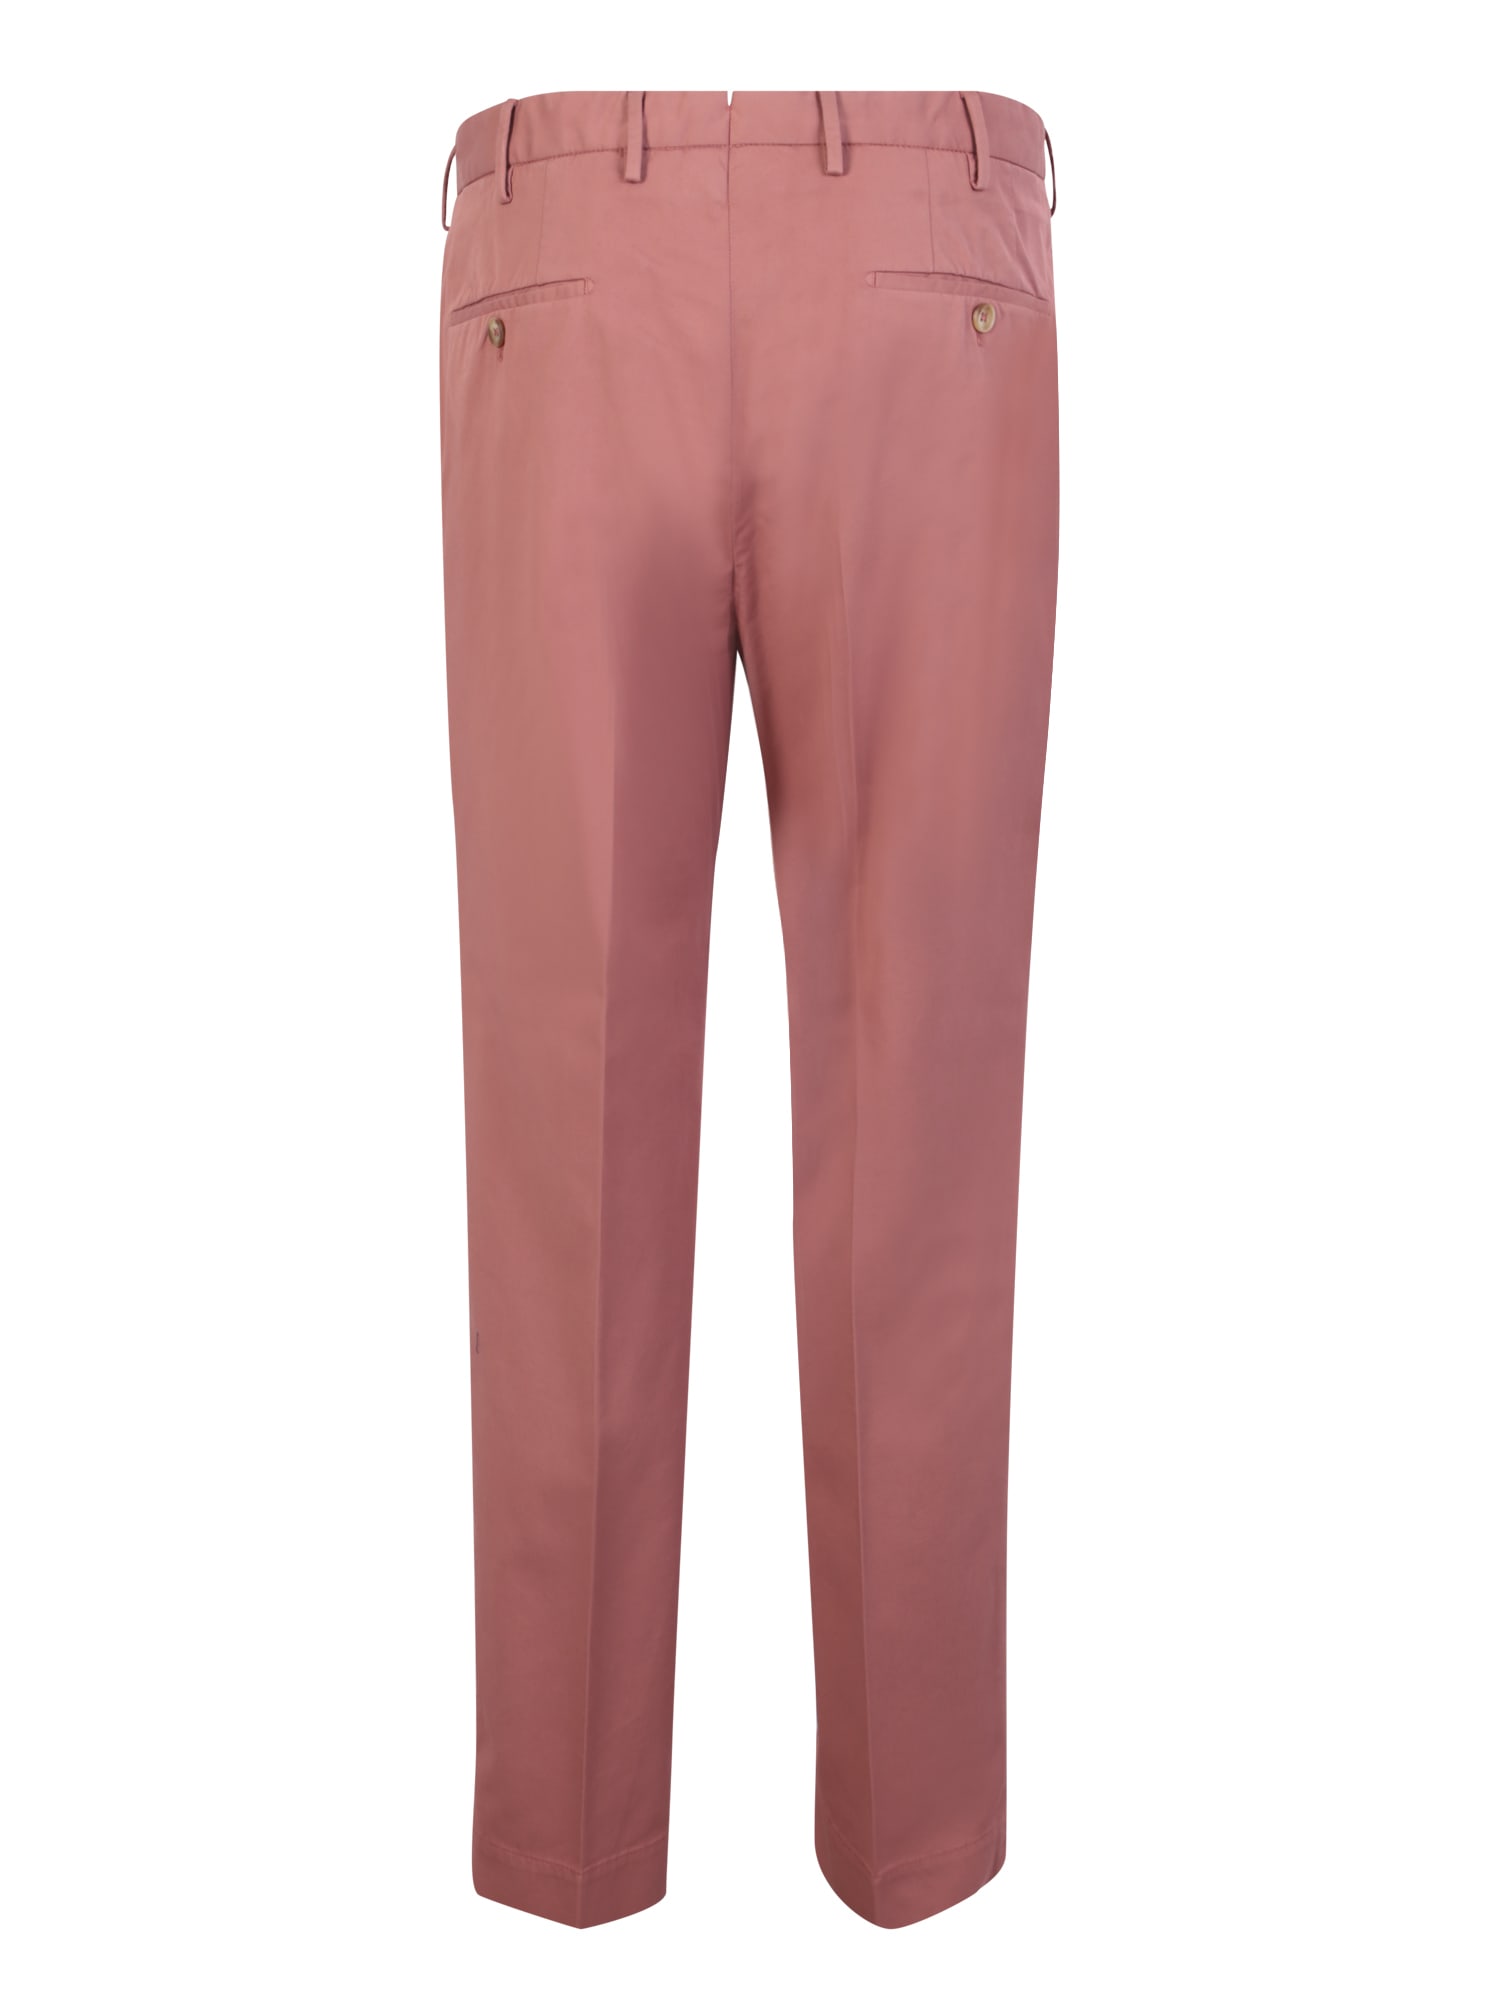 Shop Incotex Antique Pink Trousers